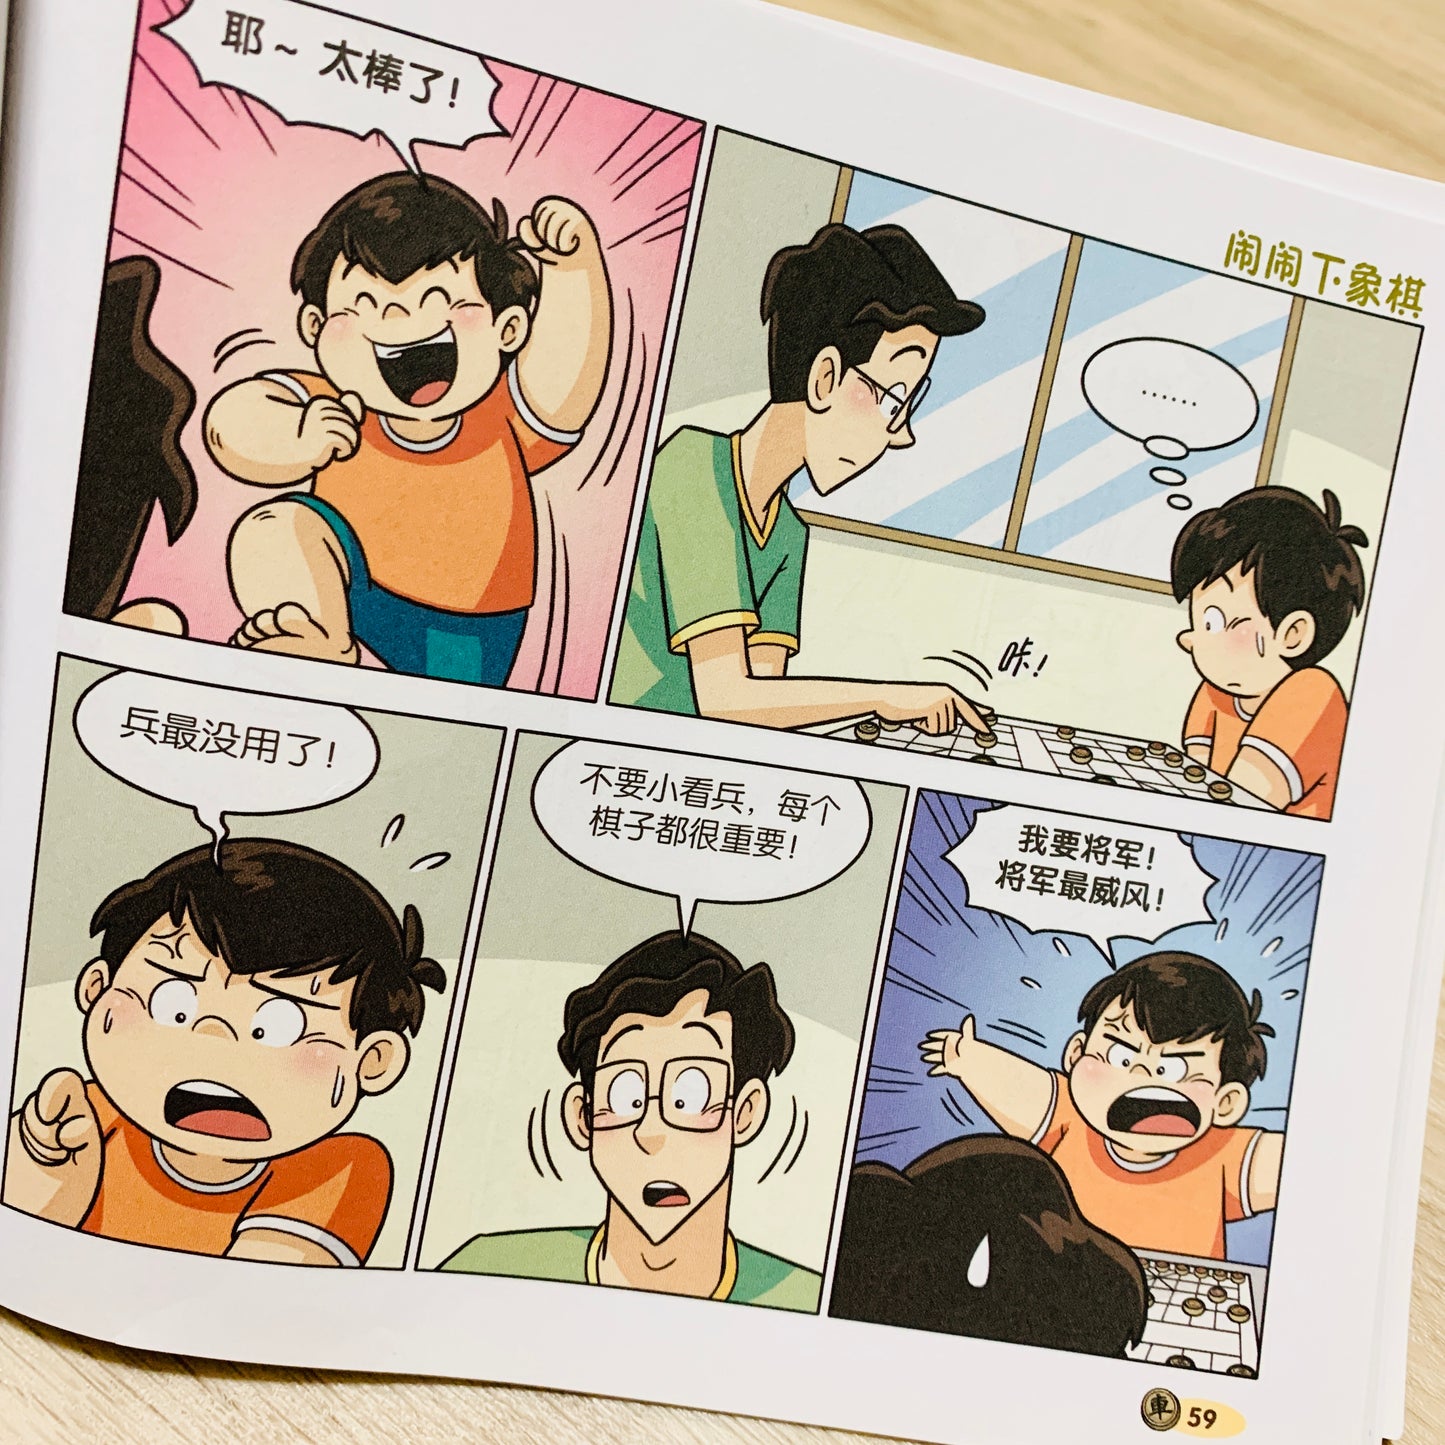 闹闹漫画系列 Nao Nao Comic Series